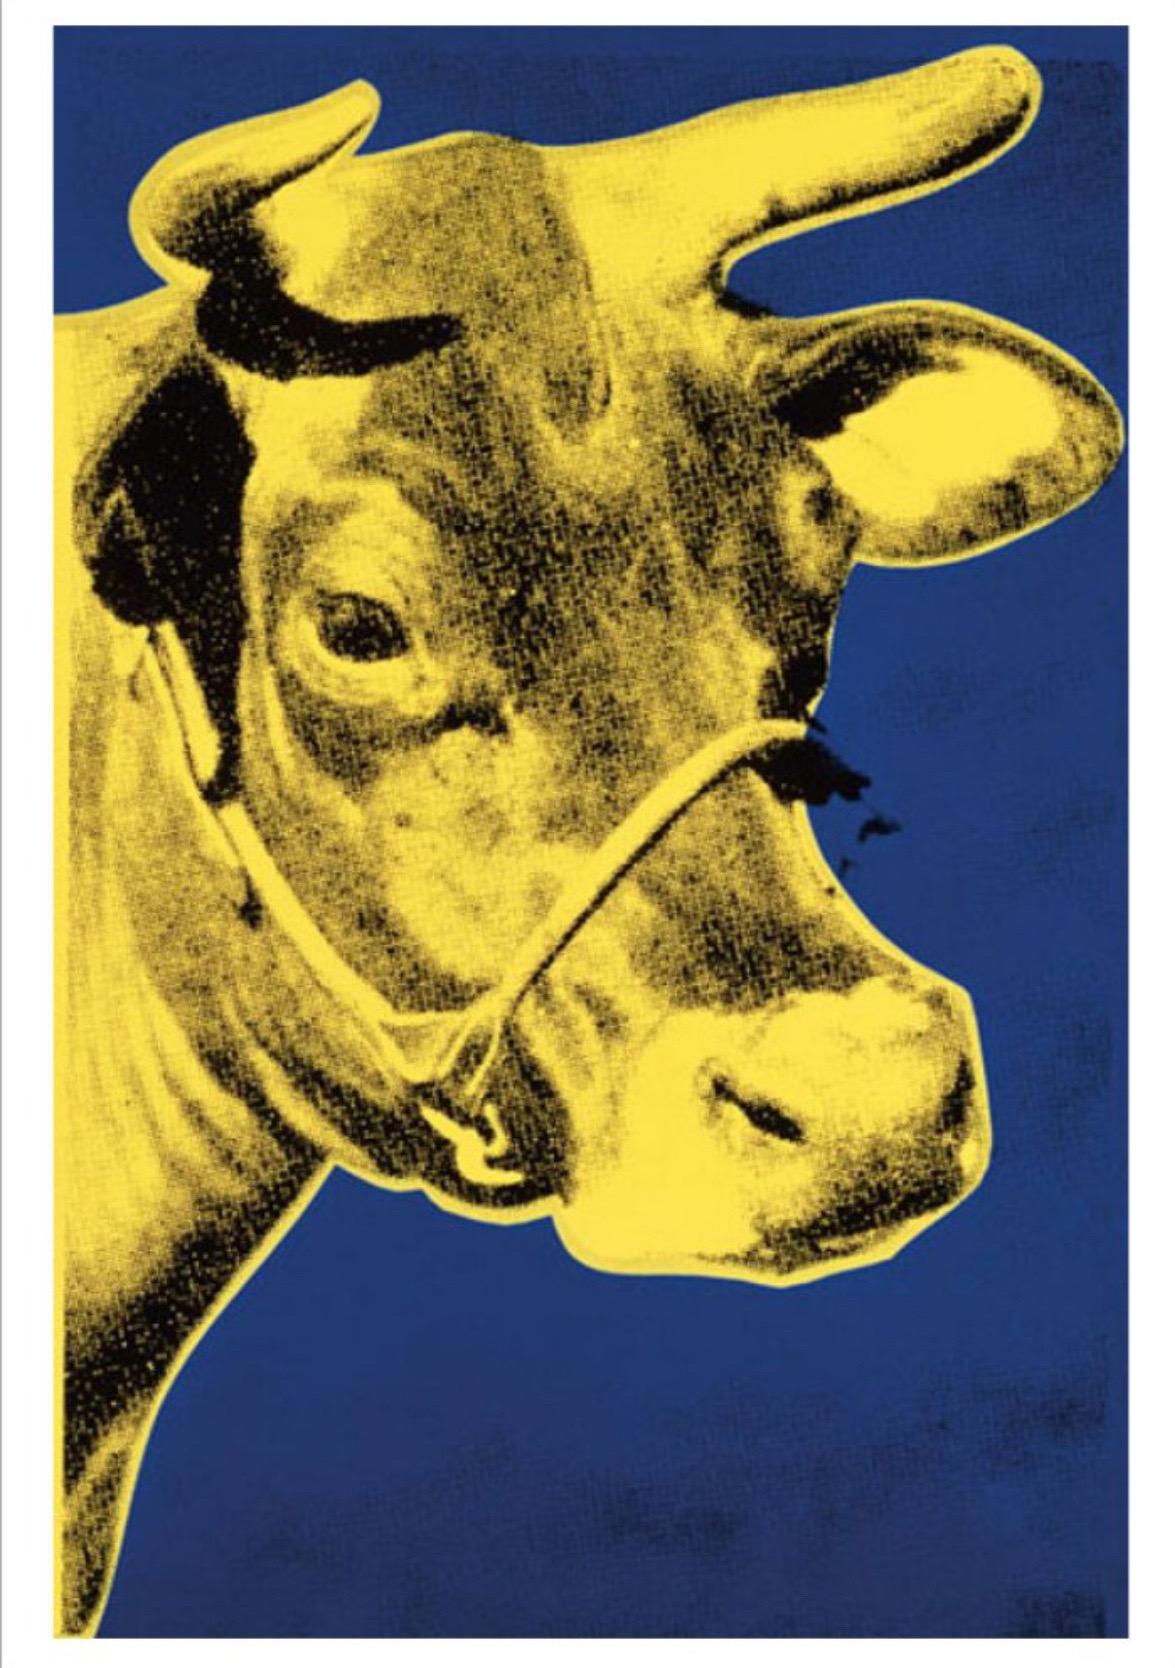 Andy Warhol, Kuh, 1971 (blau und gelb)

Mattes 250 g/m² konserviertes Digitalpapier

Bildgröße 30 x 46 cm (11,81 x 18,11 Zoll) 
Papierformat 33 x 48 cm (12,99 x 18,89 Zoll) 

In einer Ausstellung in der Galerie Leo Castelli in New York City im Jahr